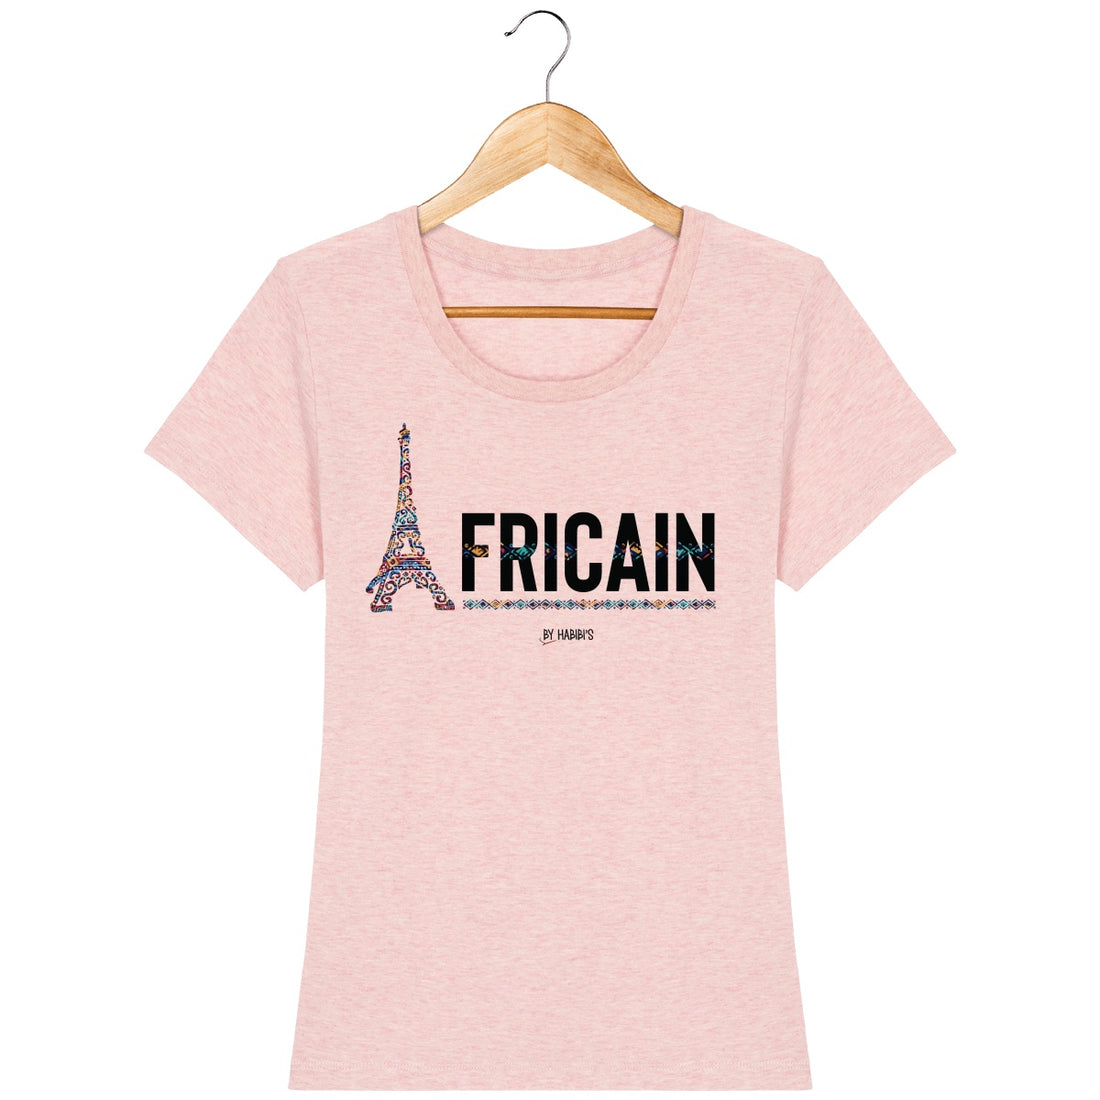 T-Shirt Femme Africain